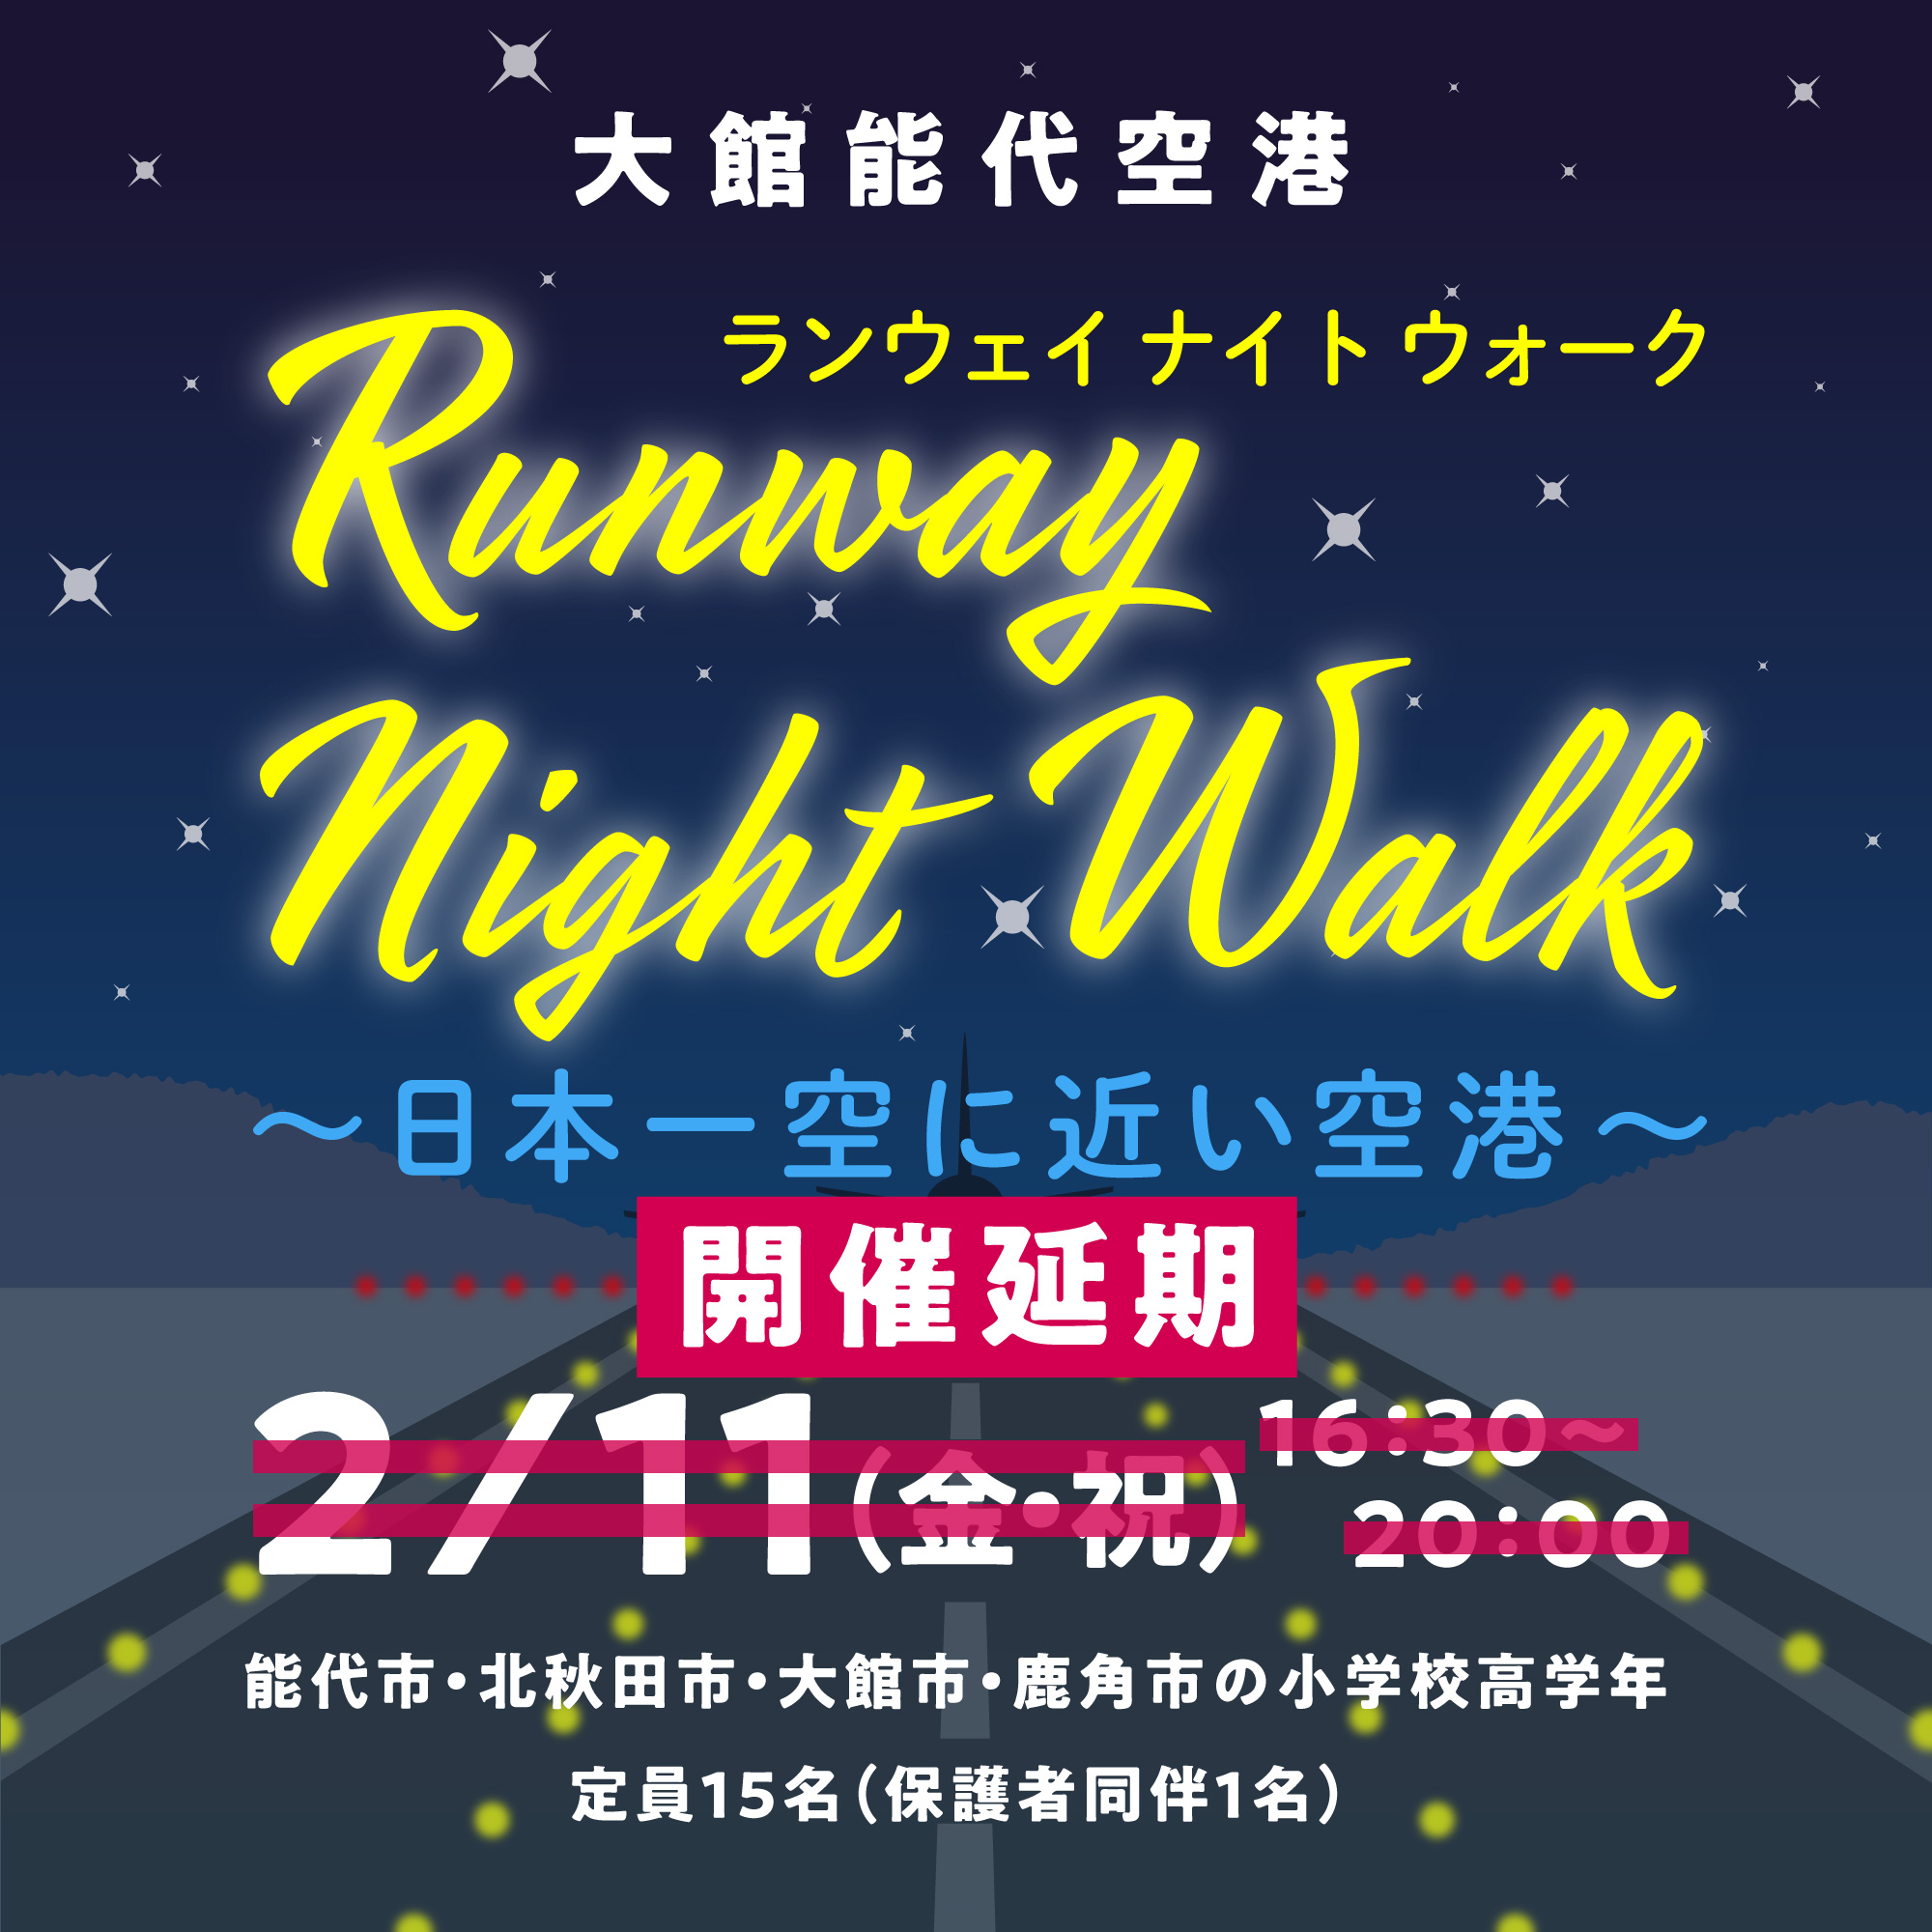 【開催延期】大館能代空港イベント「Runway Night Walk〜日本一空に近い空港〜」